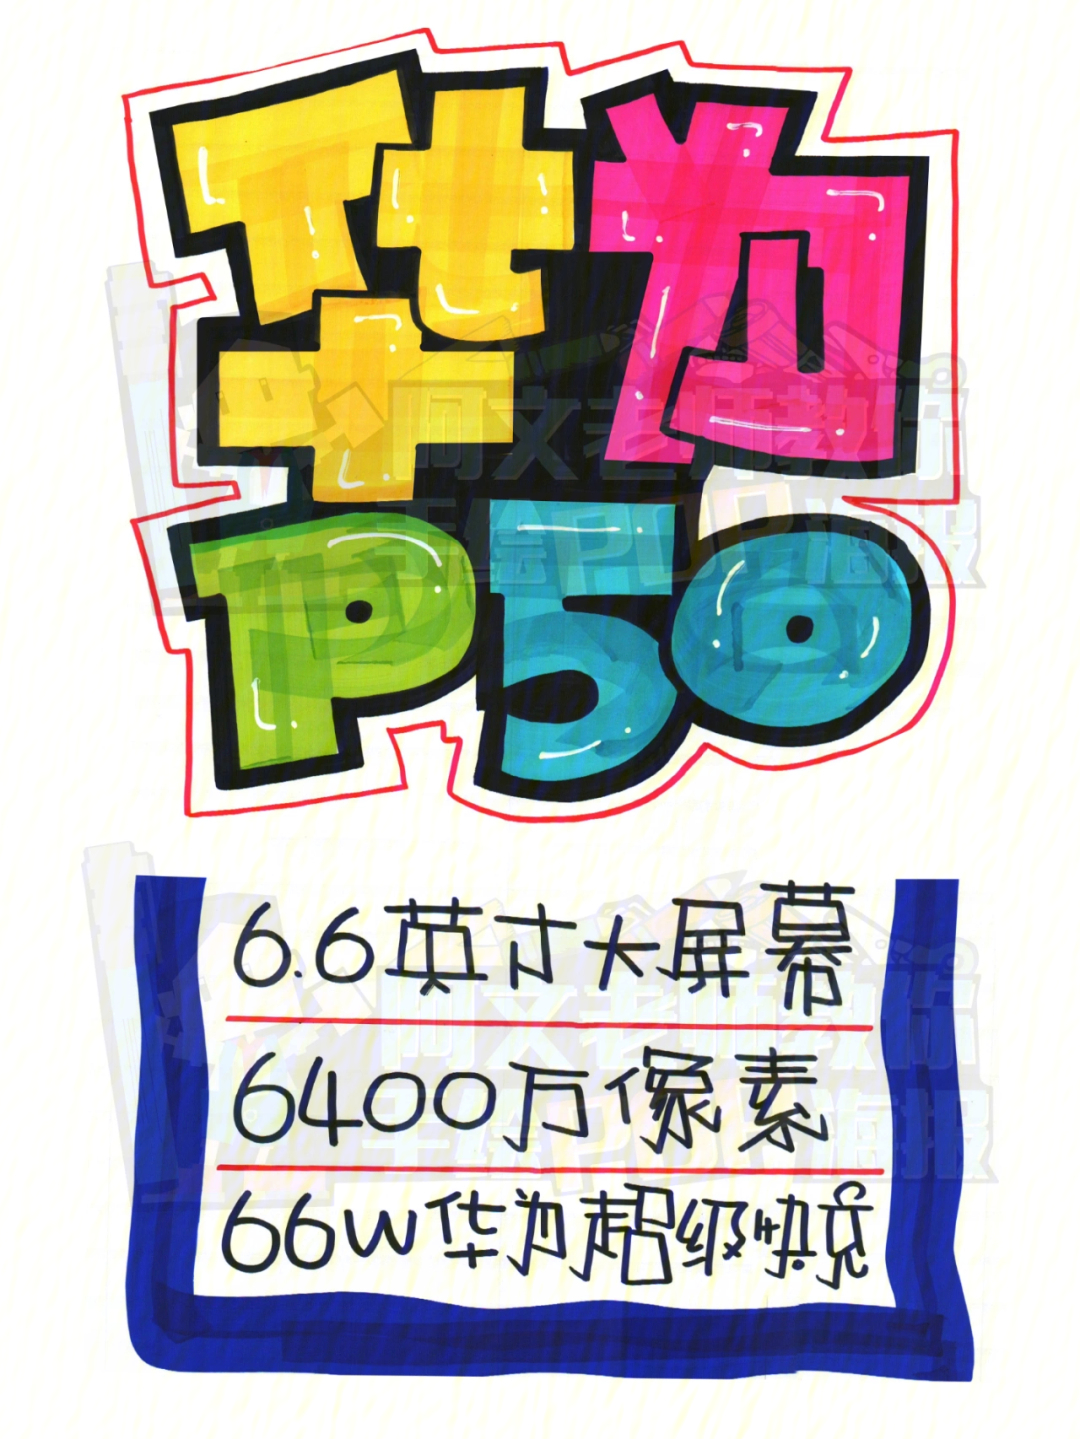 华为p50手机店手绘pop海报